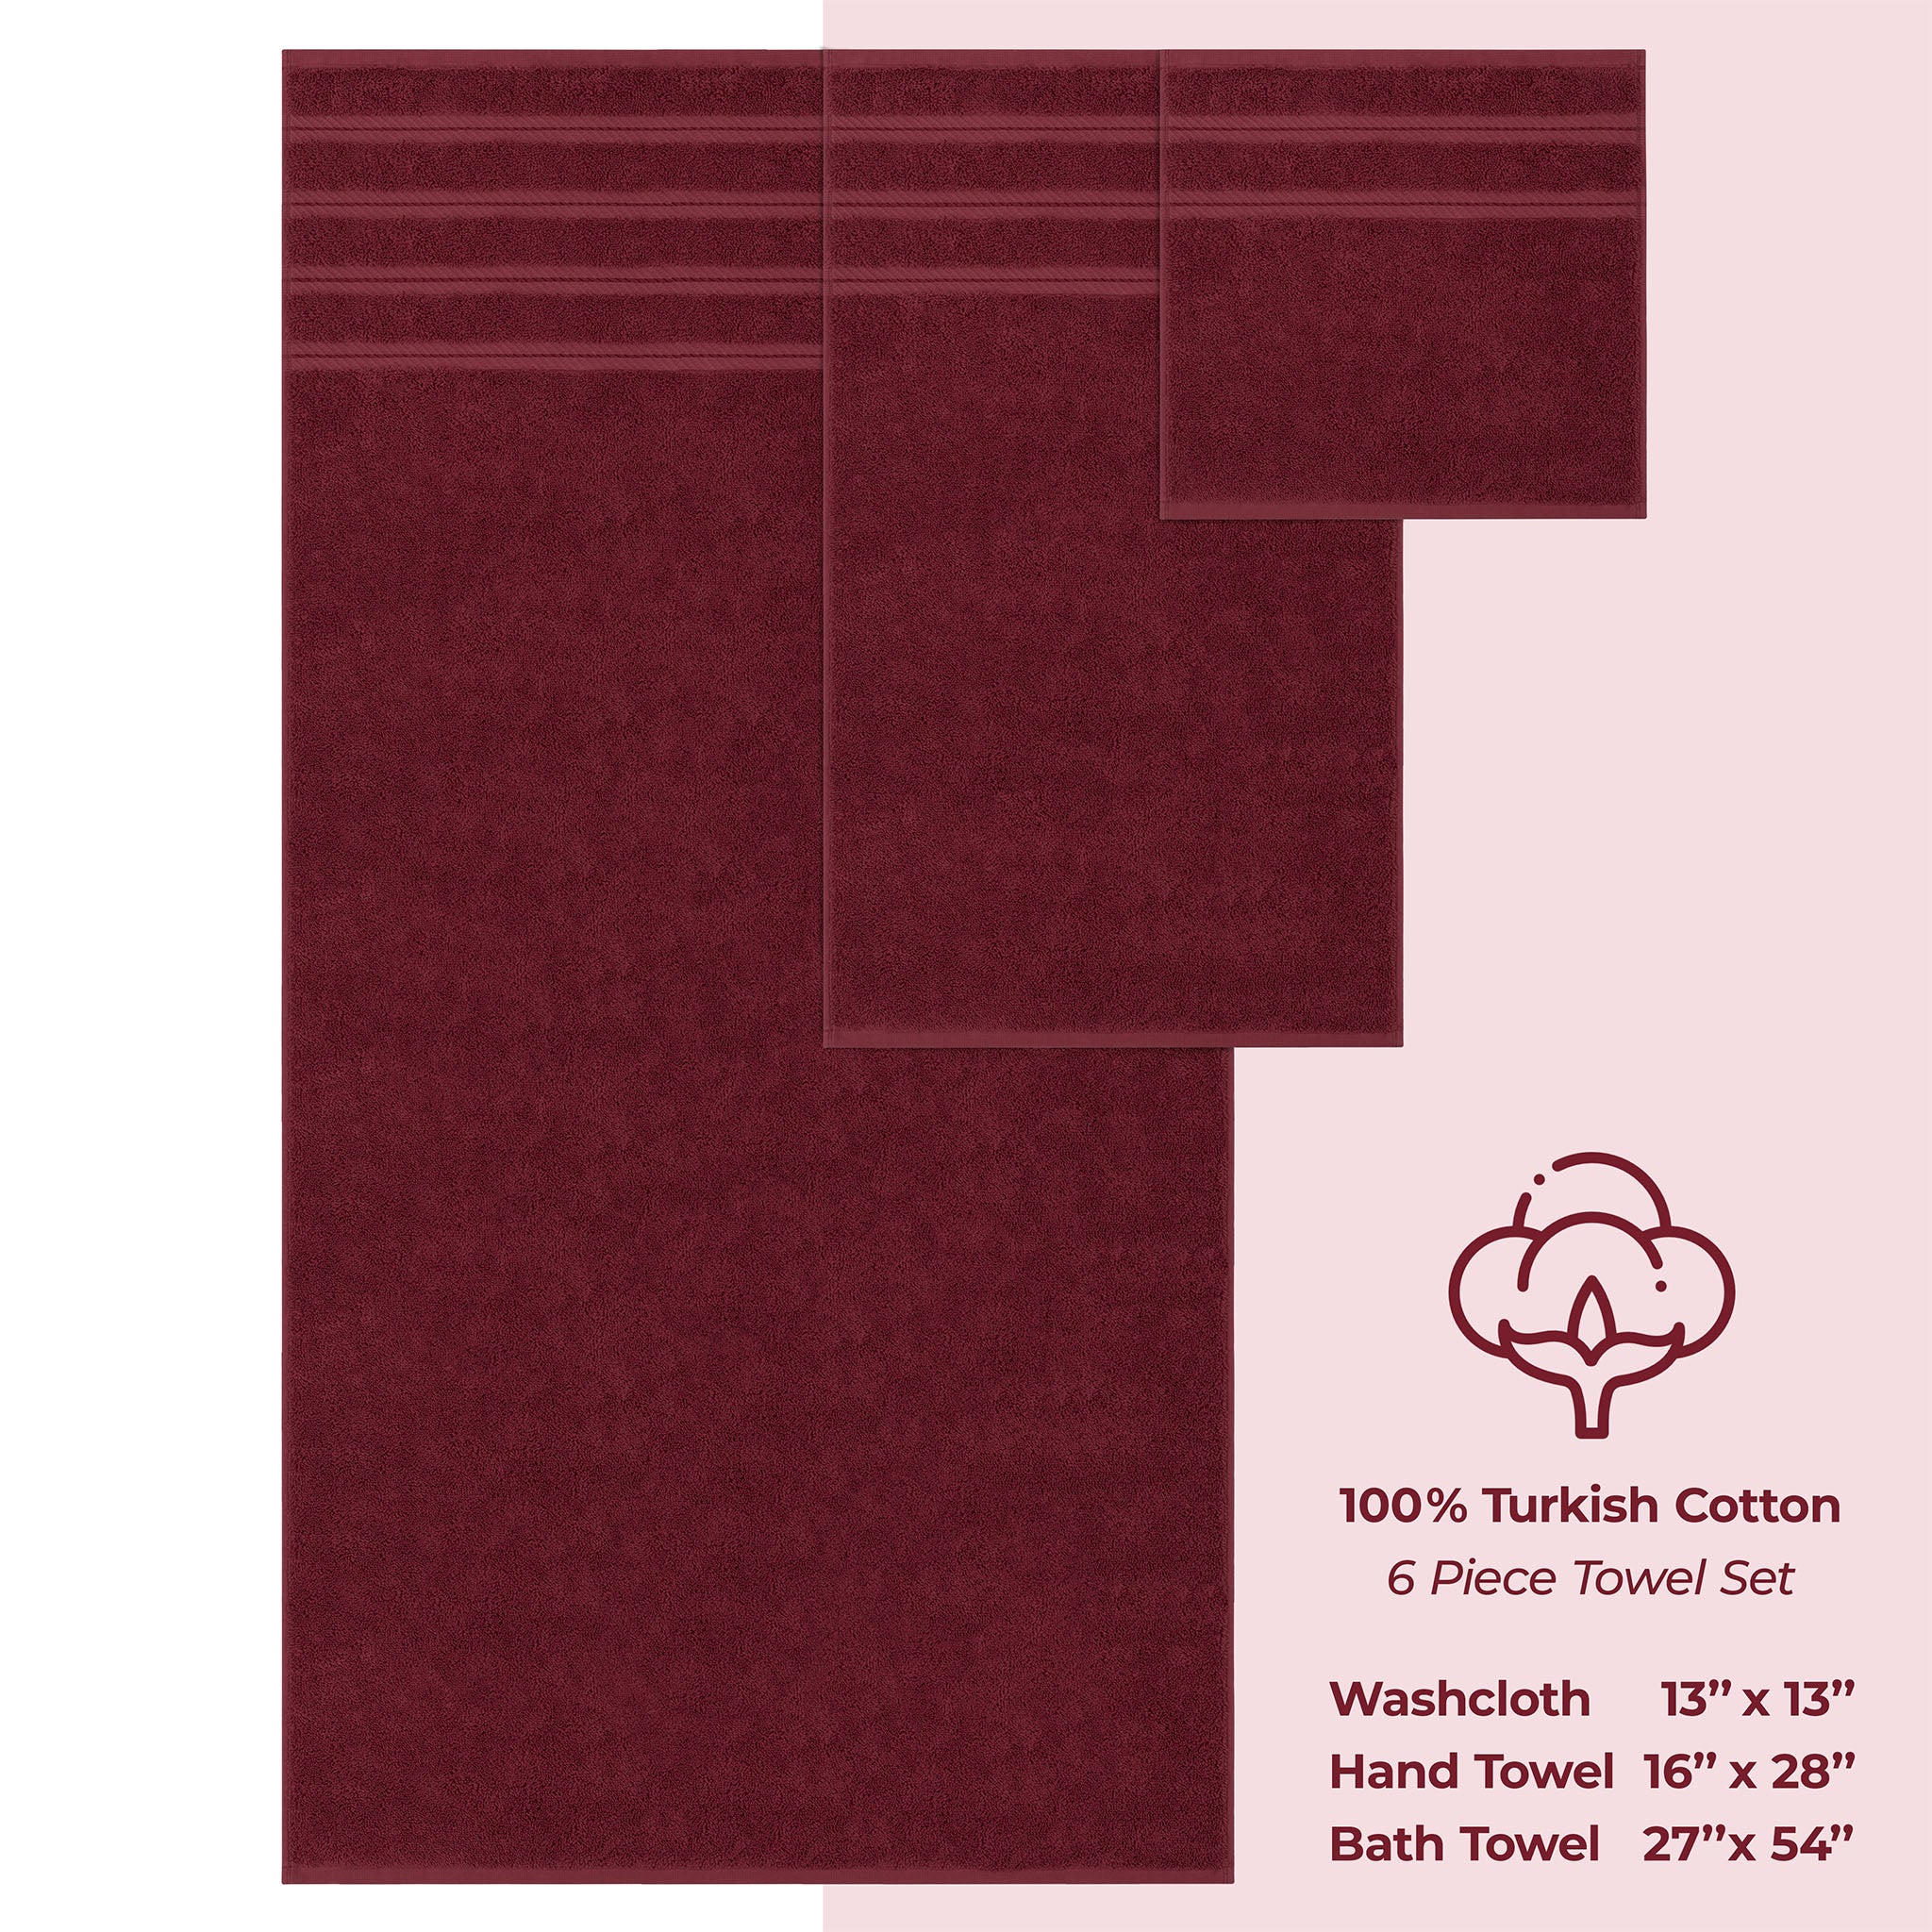 American Soft Linen 100% Turkish Cotton 6 Piece Towel Set Wholesale bordeaux-red-4